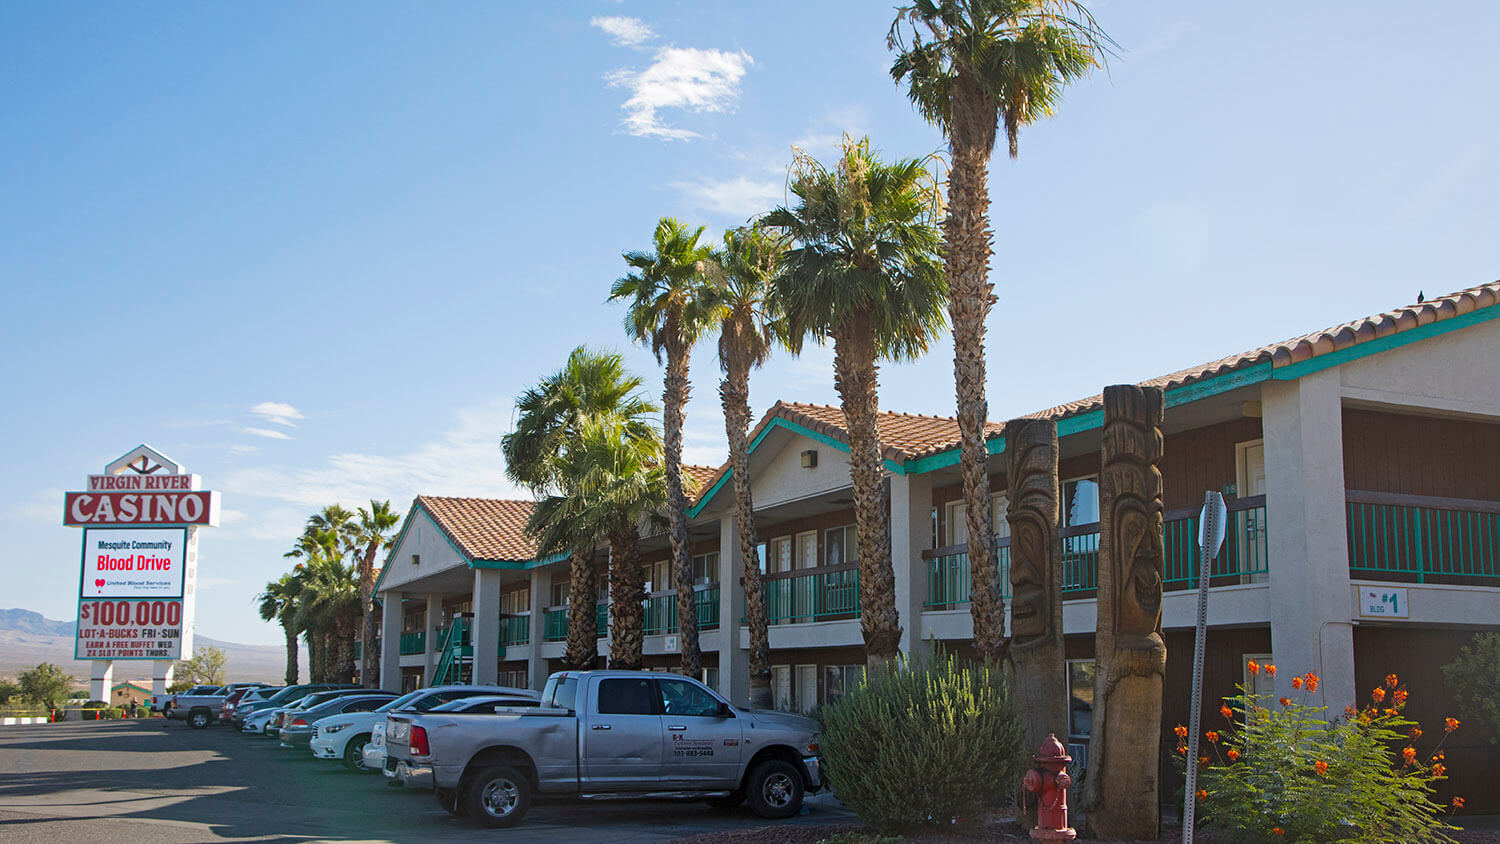 virgin river casino hotel locations